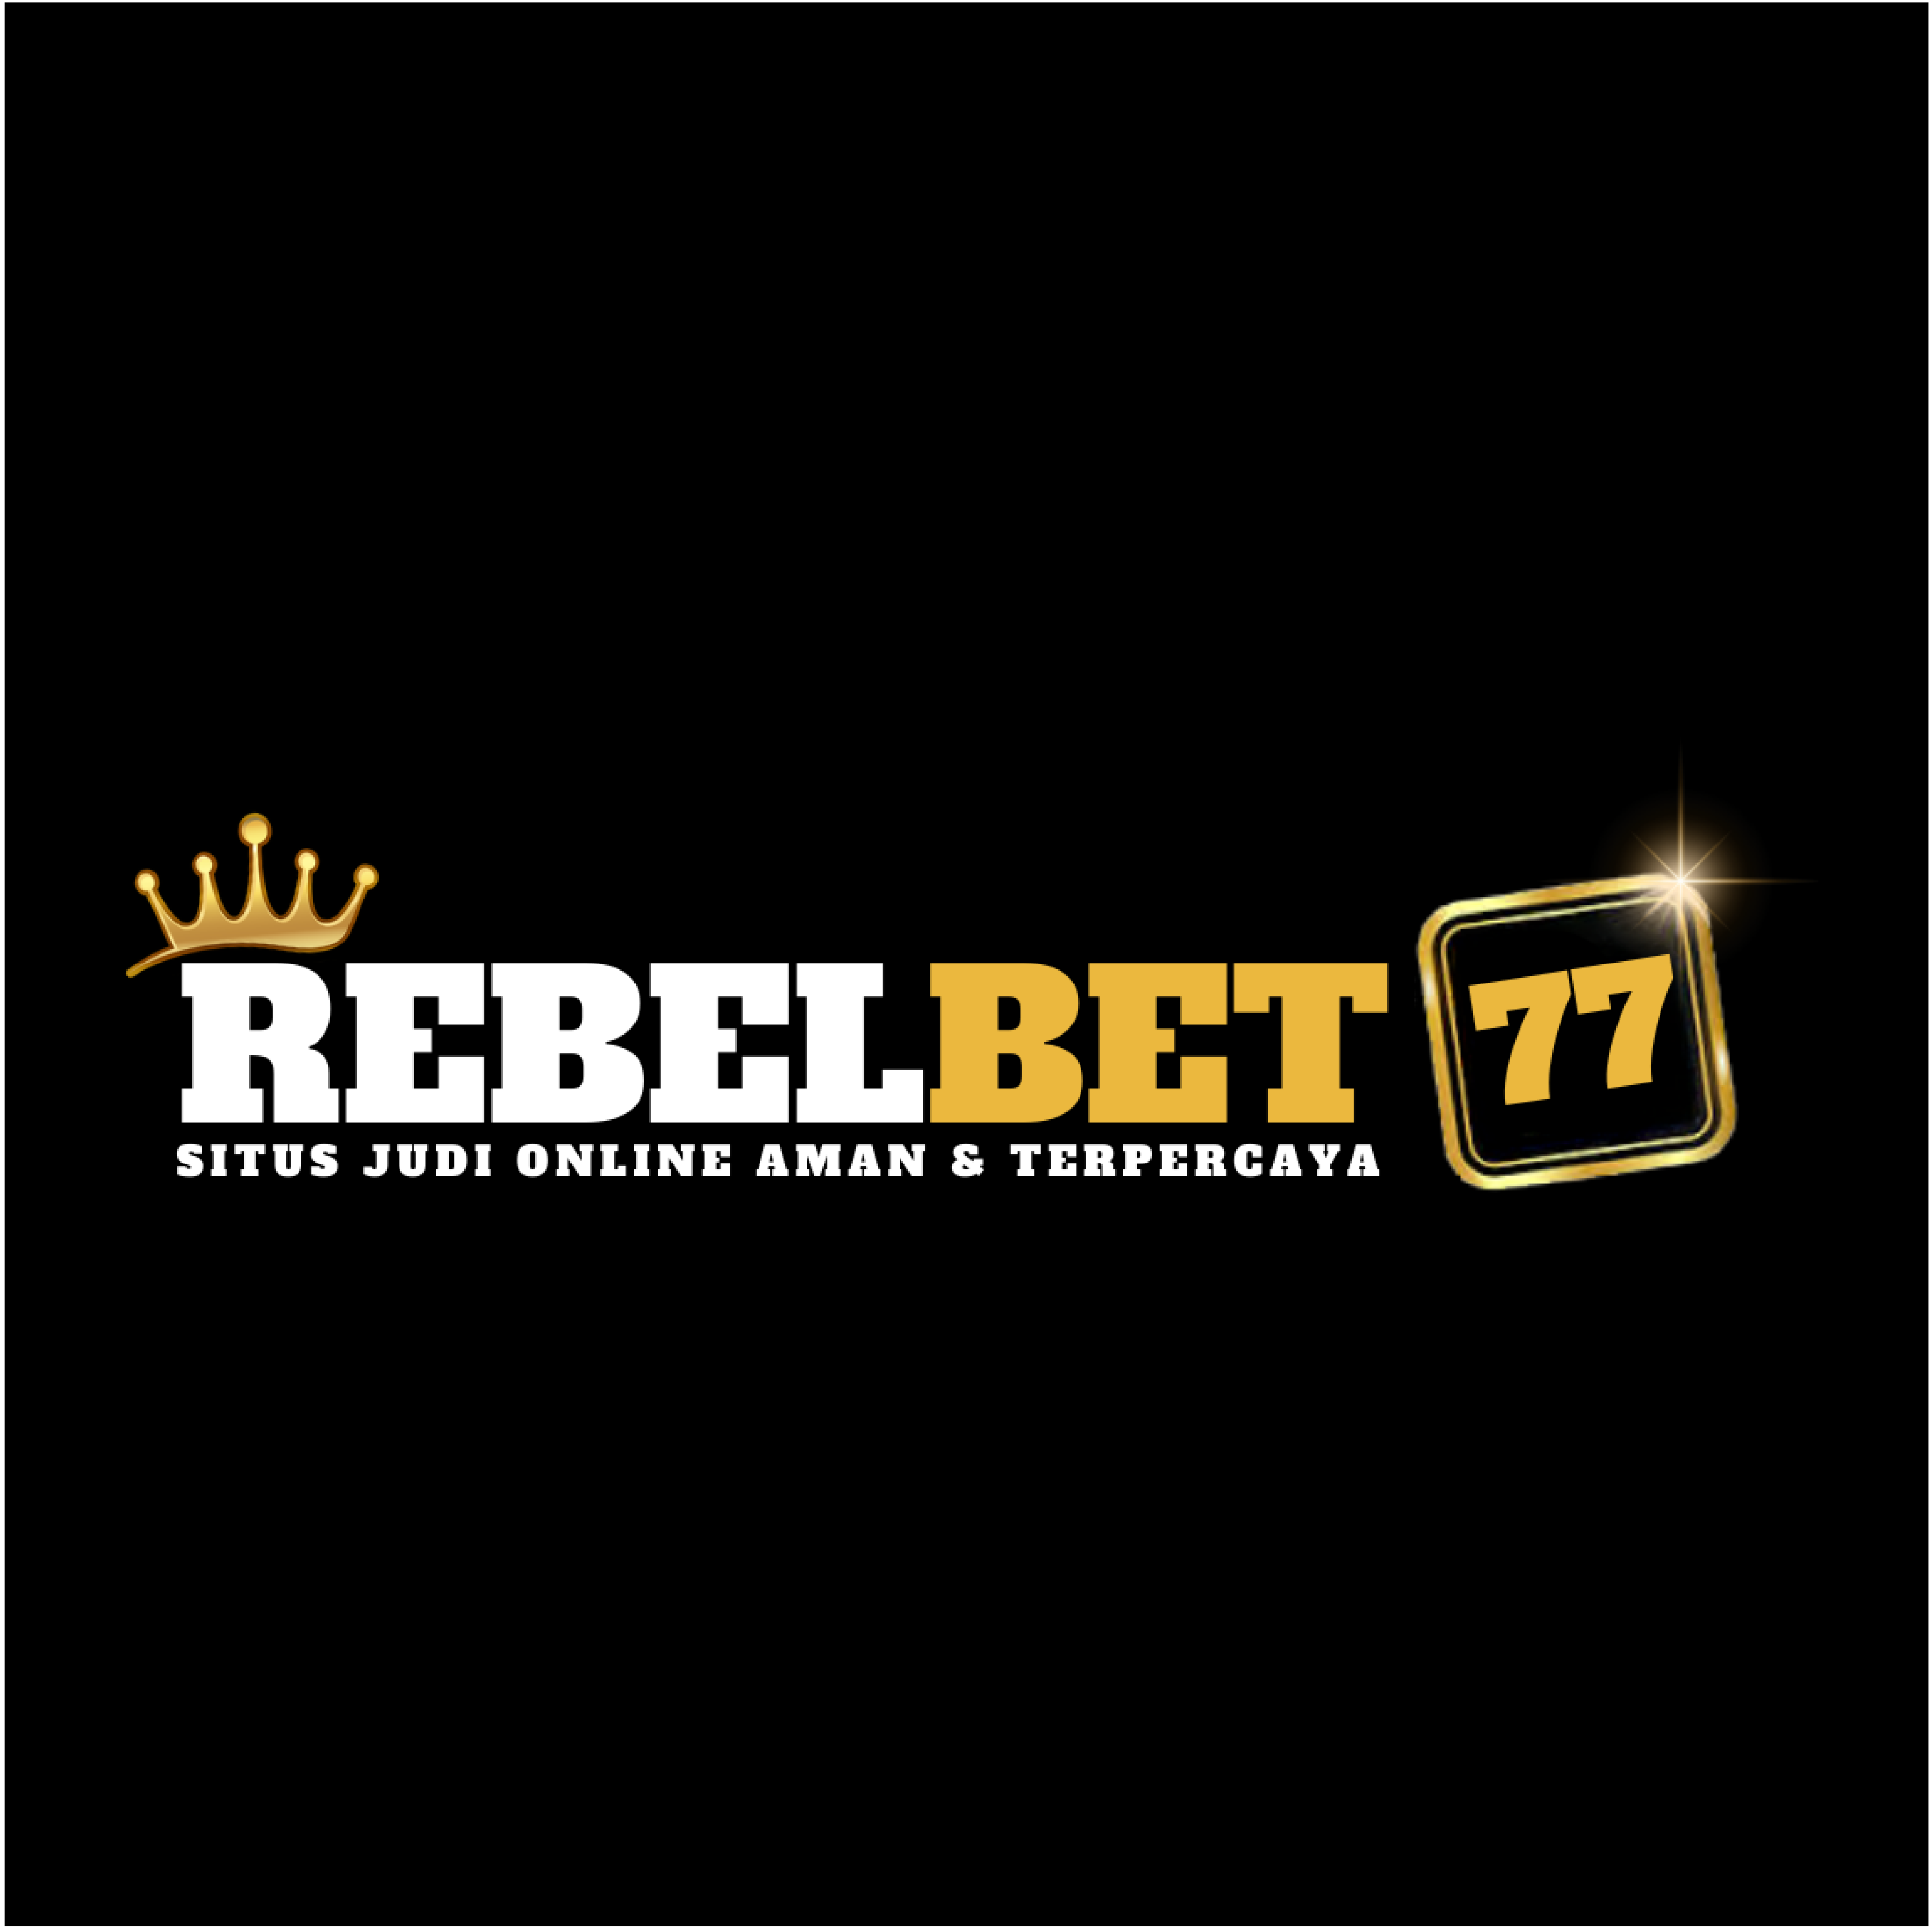 rebelbet77